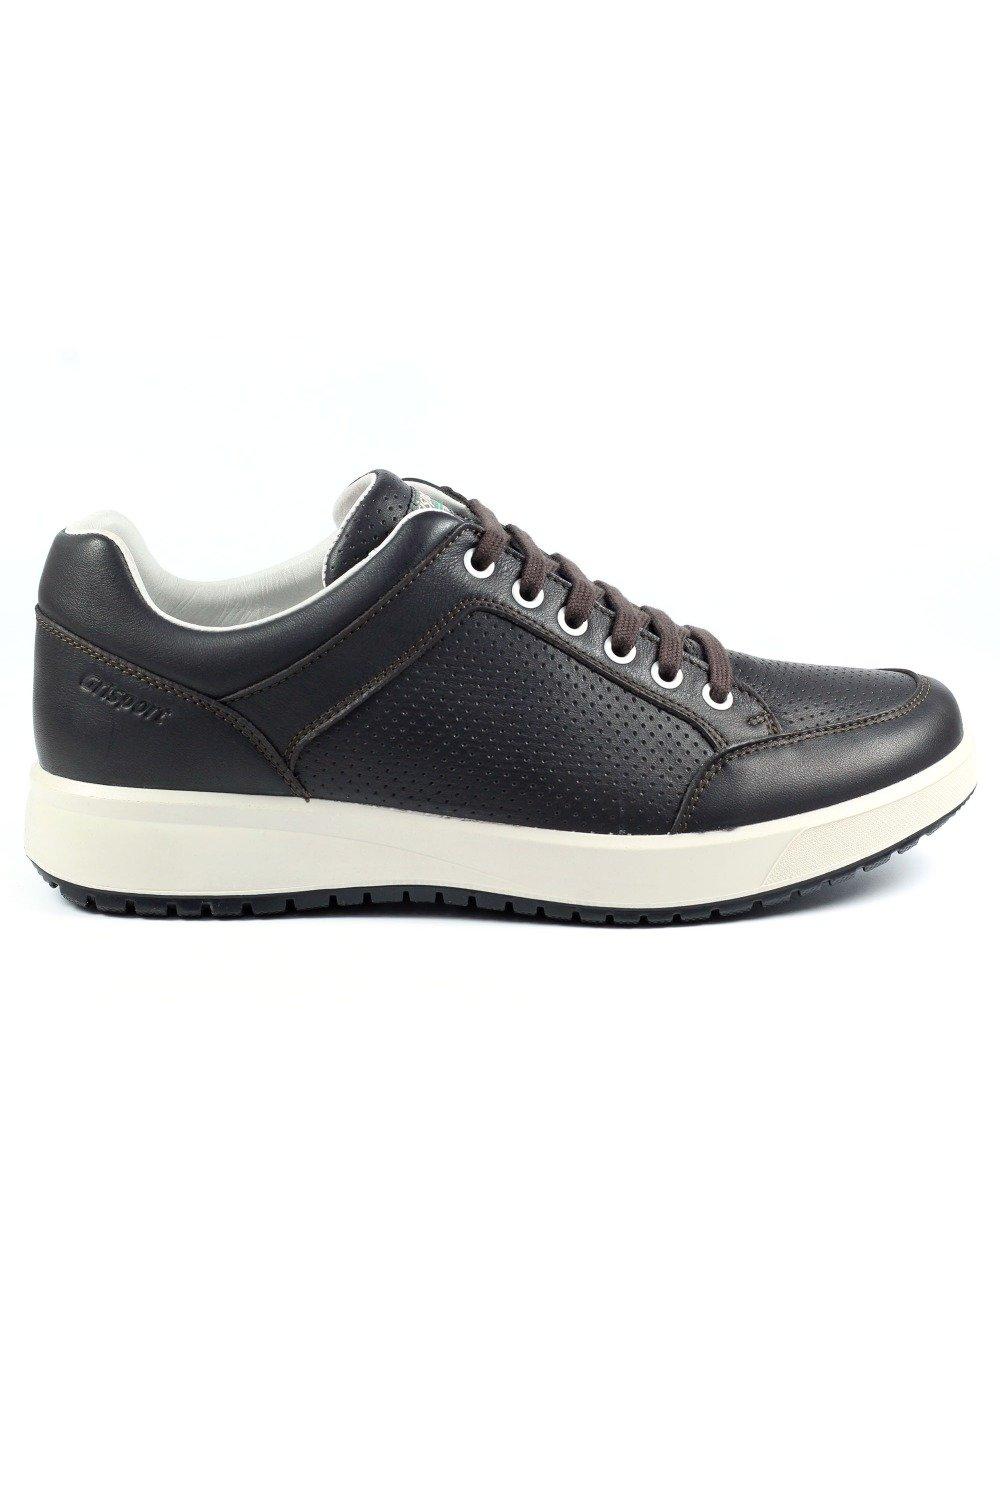 Кроссовки Leather Active Shoes Grisport, коричневый кроссовки duuo shoes sensei active negr